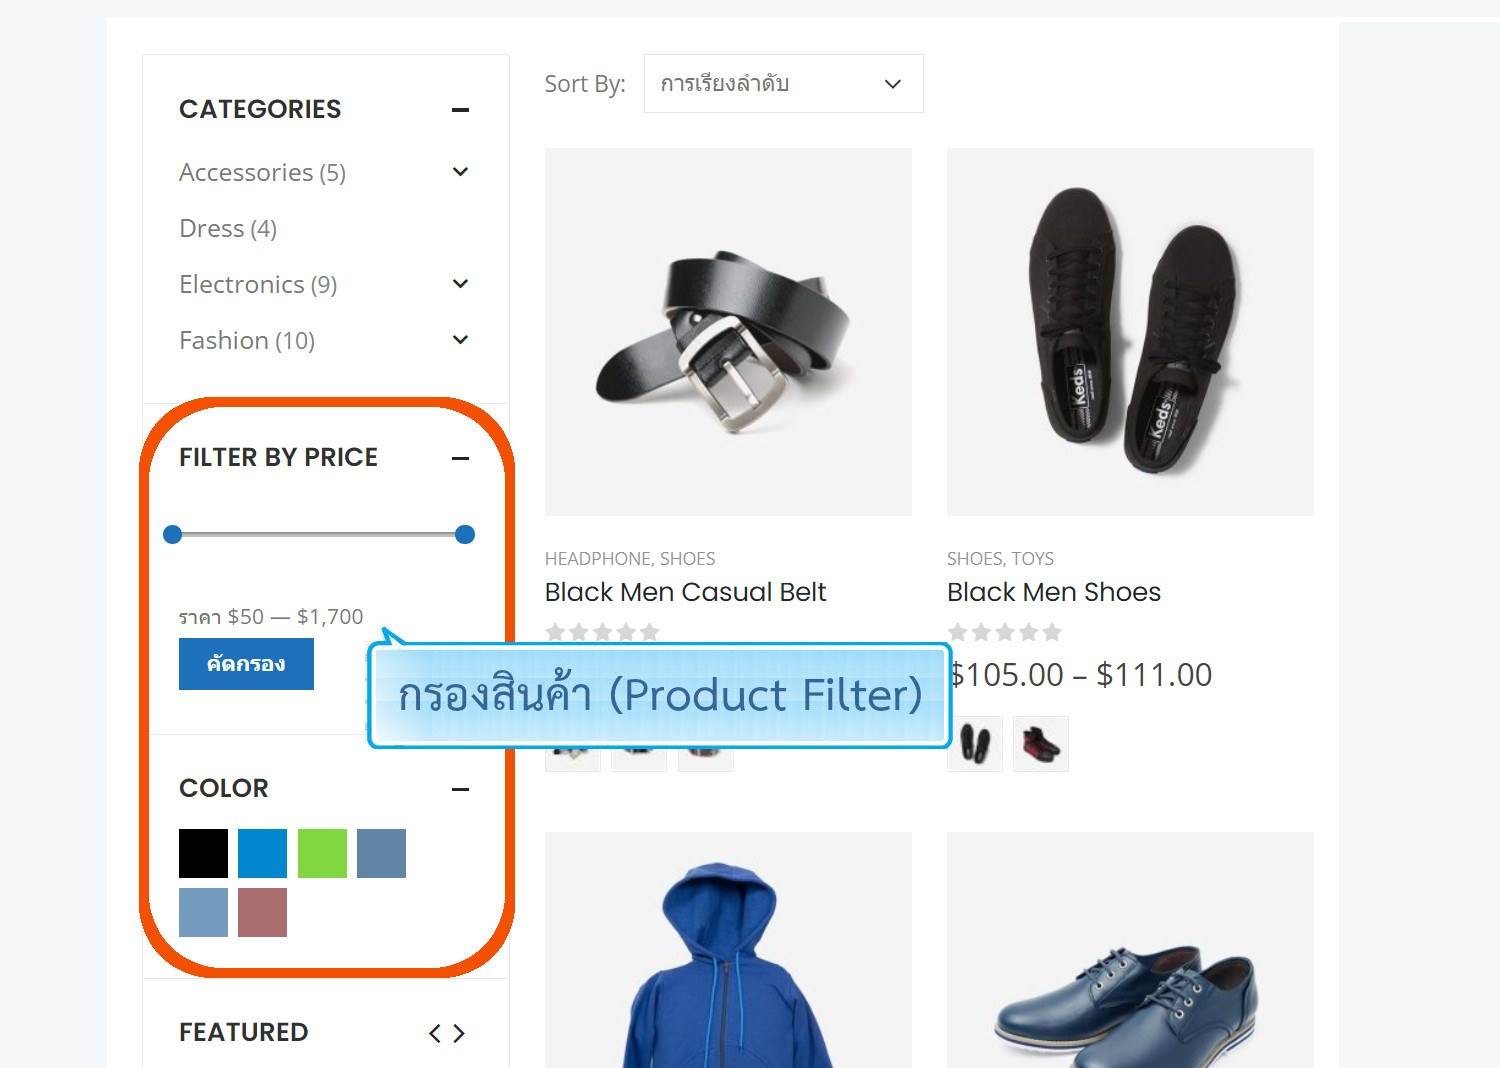 ฟีเจอร์ ecommerce ร้านออนไลน์ ขายของออนไลน์ - ตัวกรองสินค้า (Product filter) บนหน้าร้านออนไลน์- เปิดร้านออนไลน์ ขายของออนไลน์ เว็บอีคอมเมอร์ส ด้วยเว็บไซต์สำเร็จรูป Ninenic ecommerce